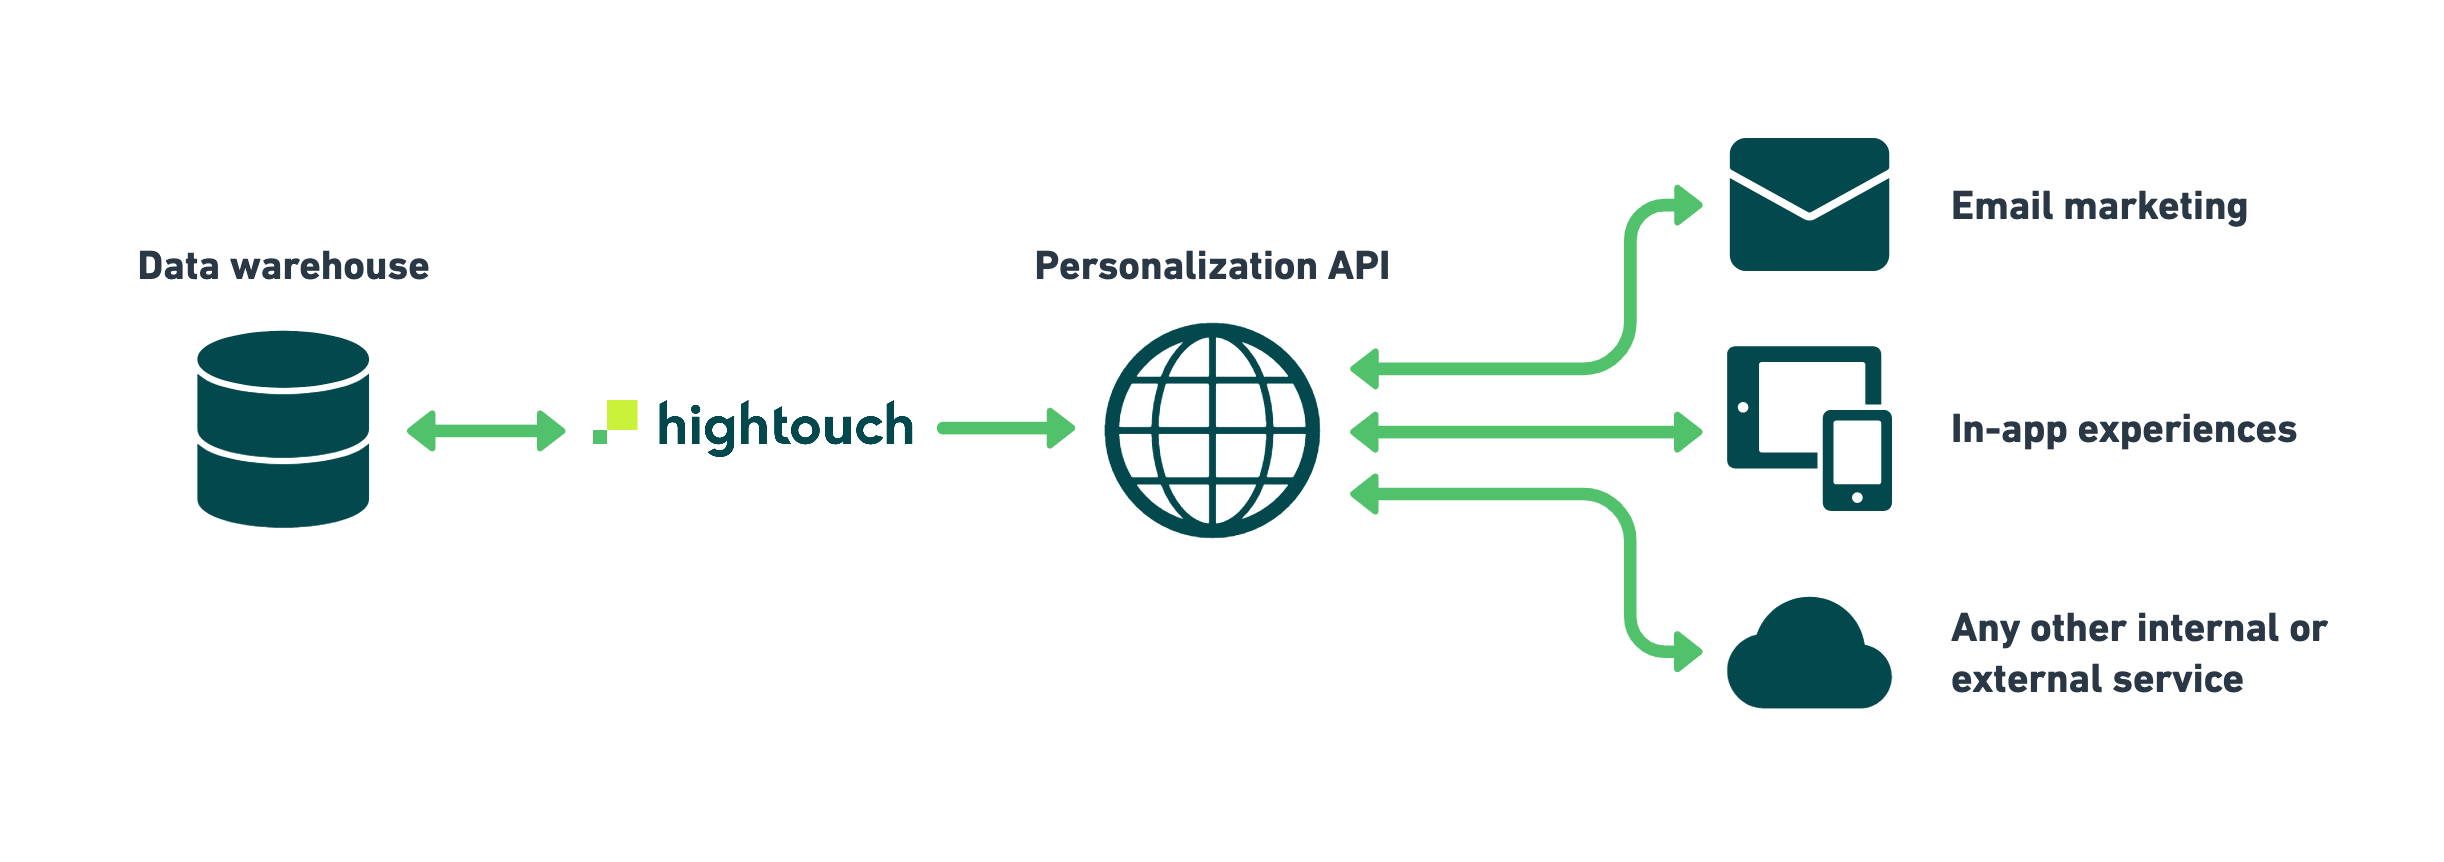 Personalization API architecture diagram